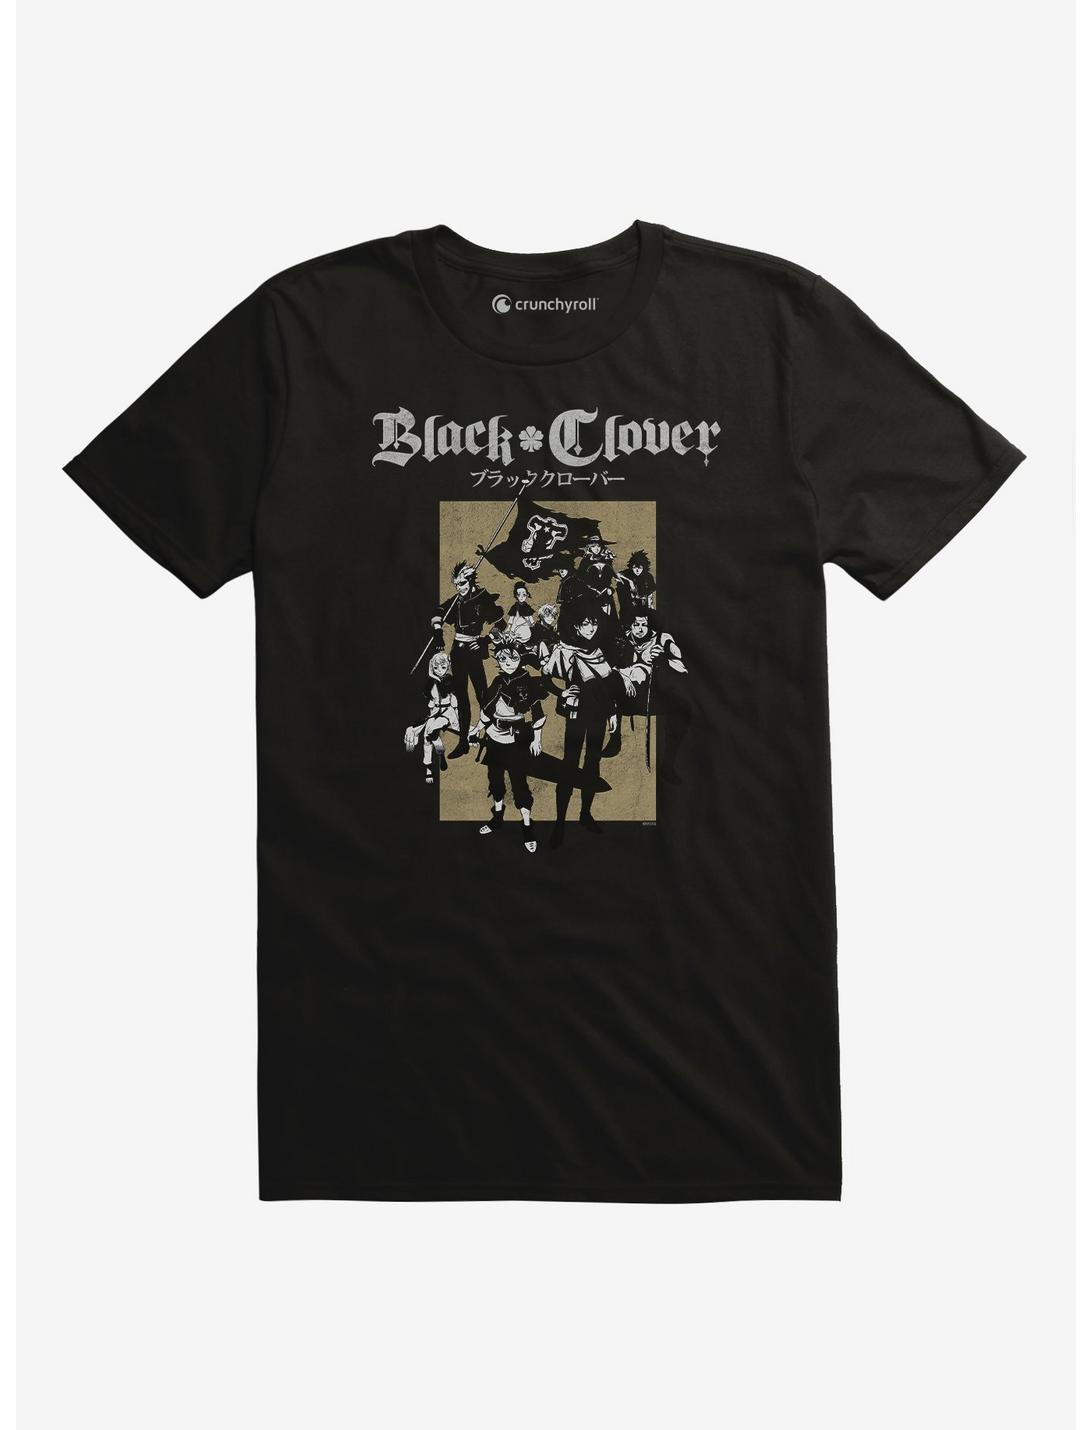 Black Clover Group T-Shirt, BLACK, hi-res